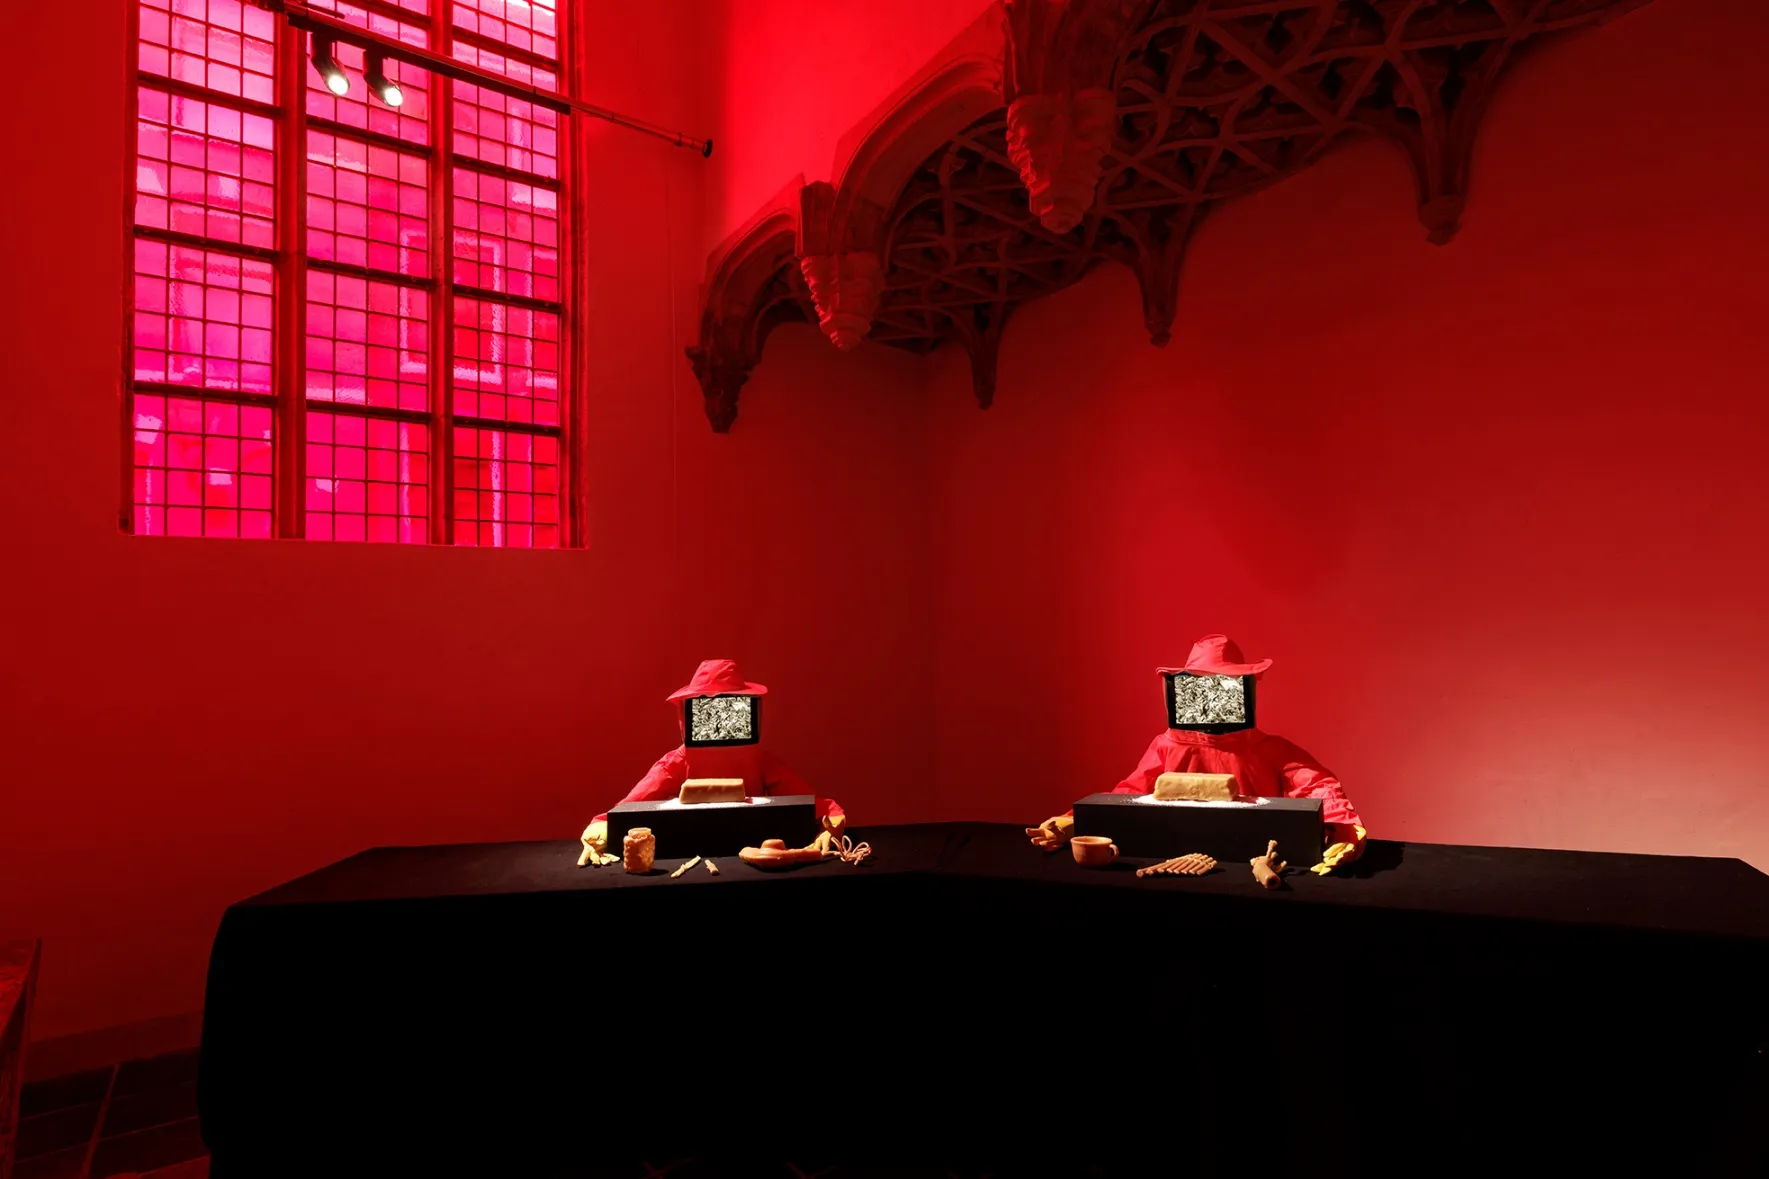 Twee rode imkerpakken met gezichten bedekt met een tv-scherm zitten aan een zwarte tafel met bijenwasobjecten, verlicht door rood licht.